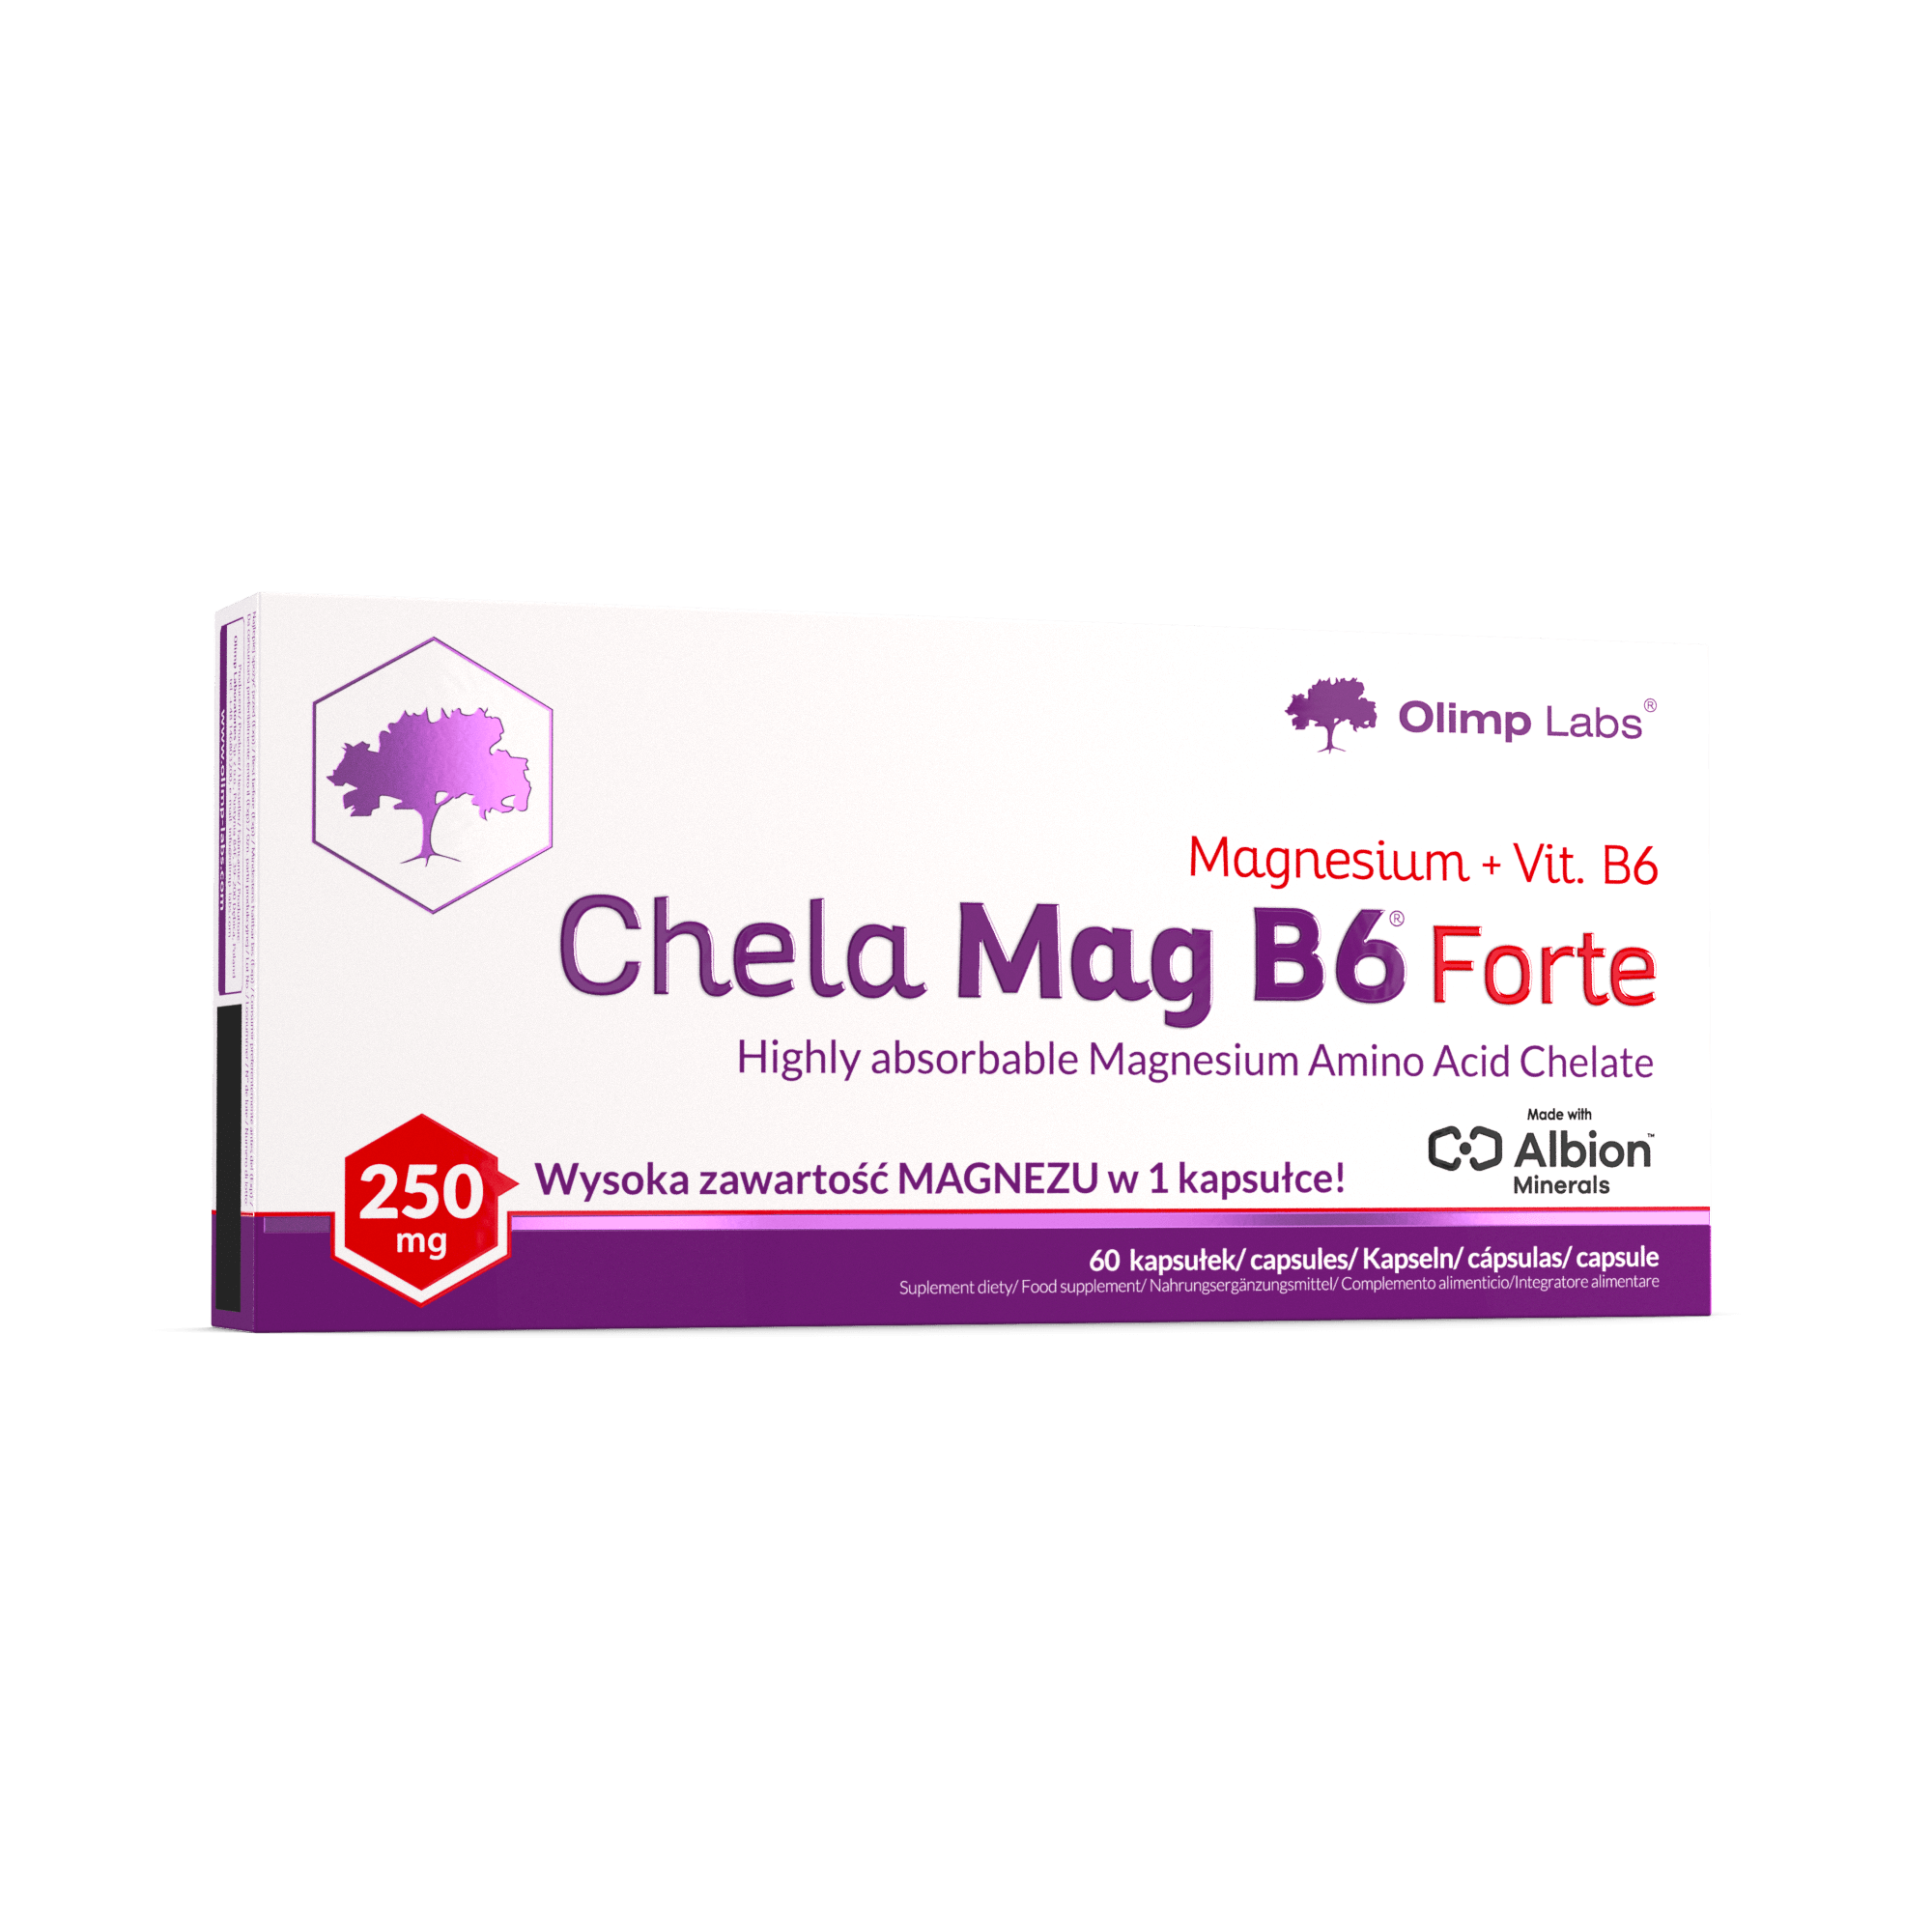 Chela Mag B6 Forte